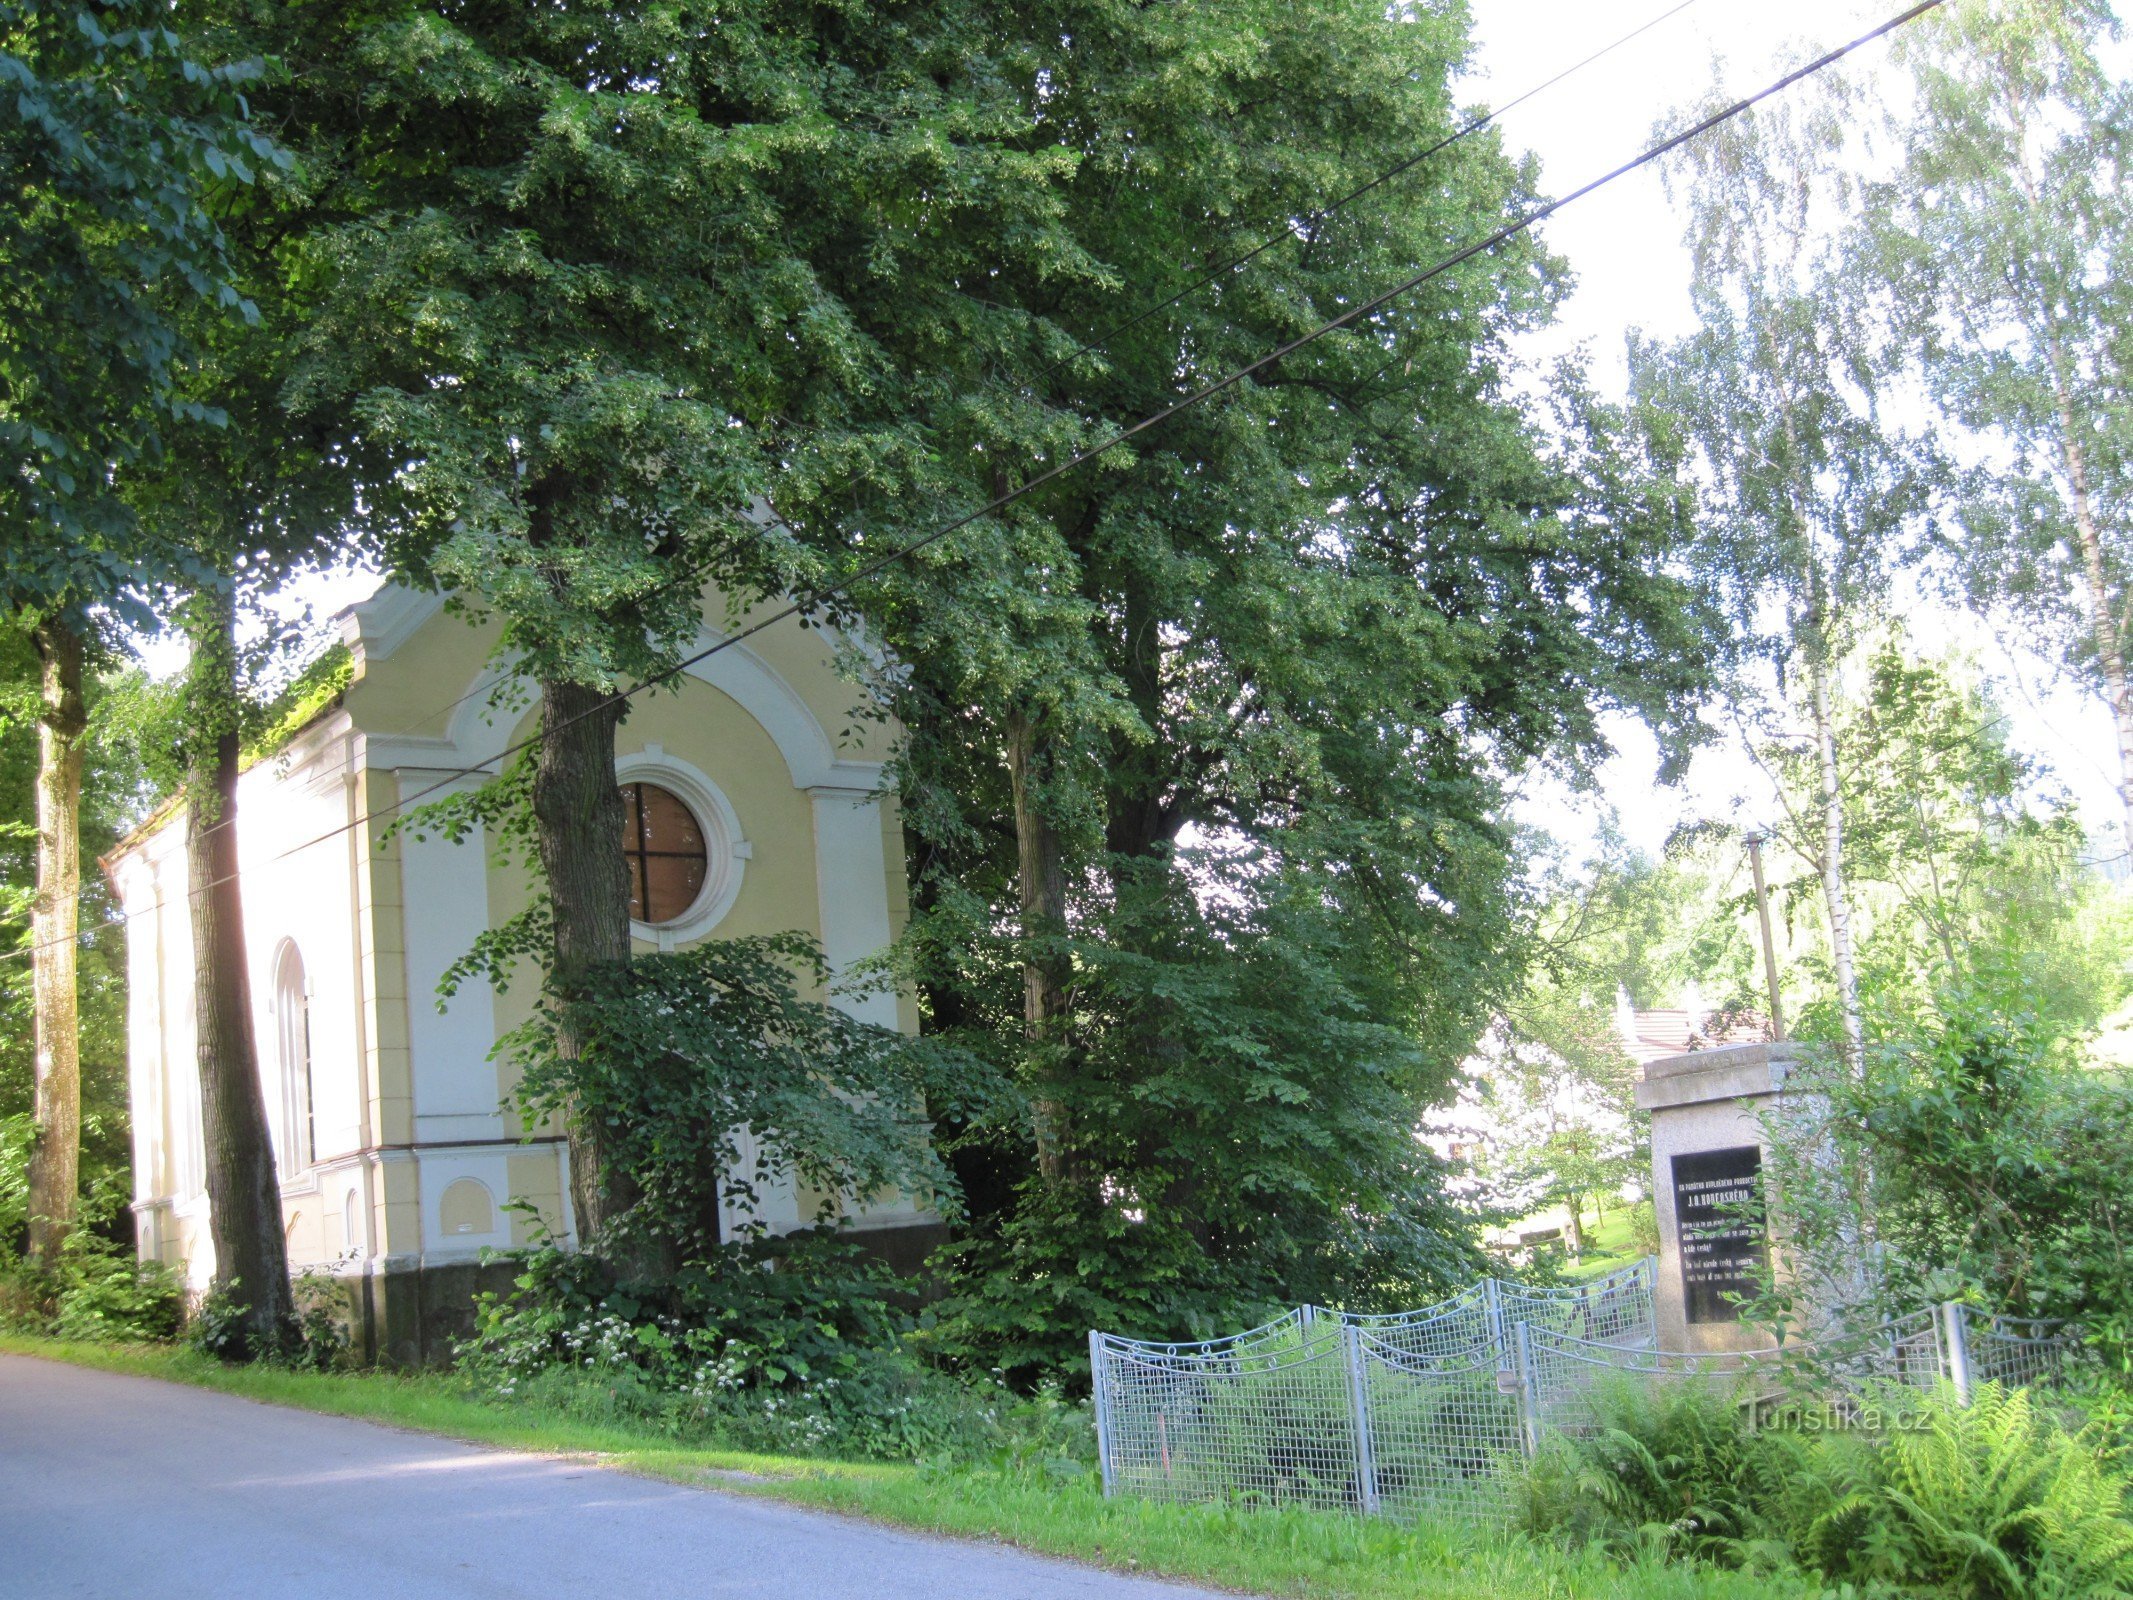 Kapel uit 1901 in Dlouhá Stropnice met een monument voor het einde van de Tweede Wereldoorlog. Wereldoorlog